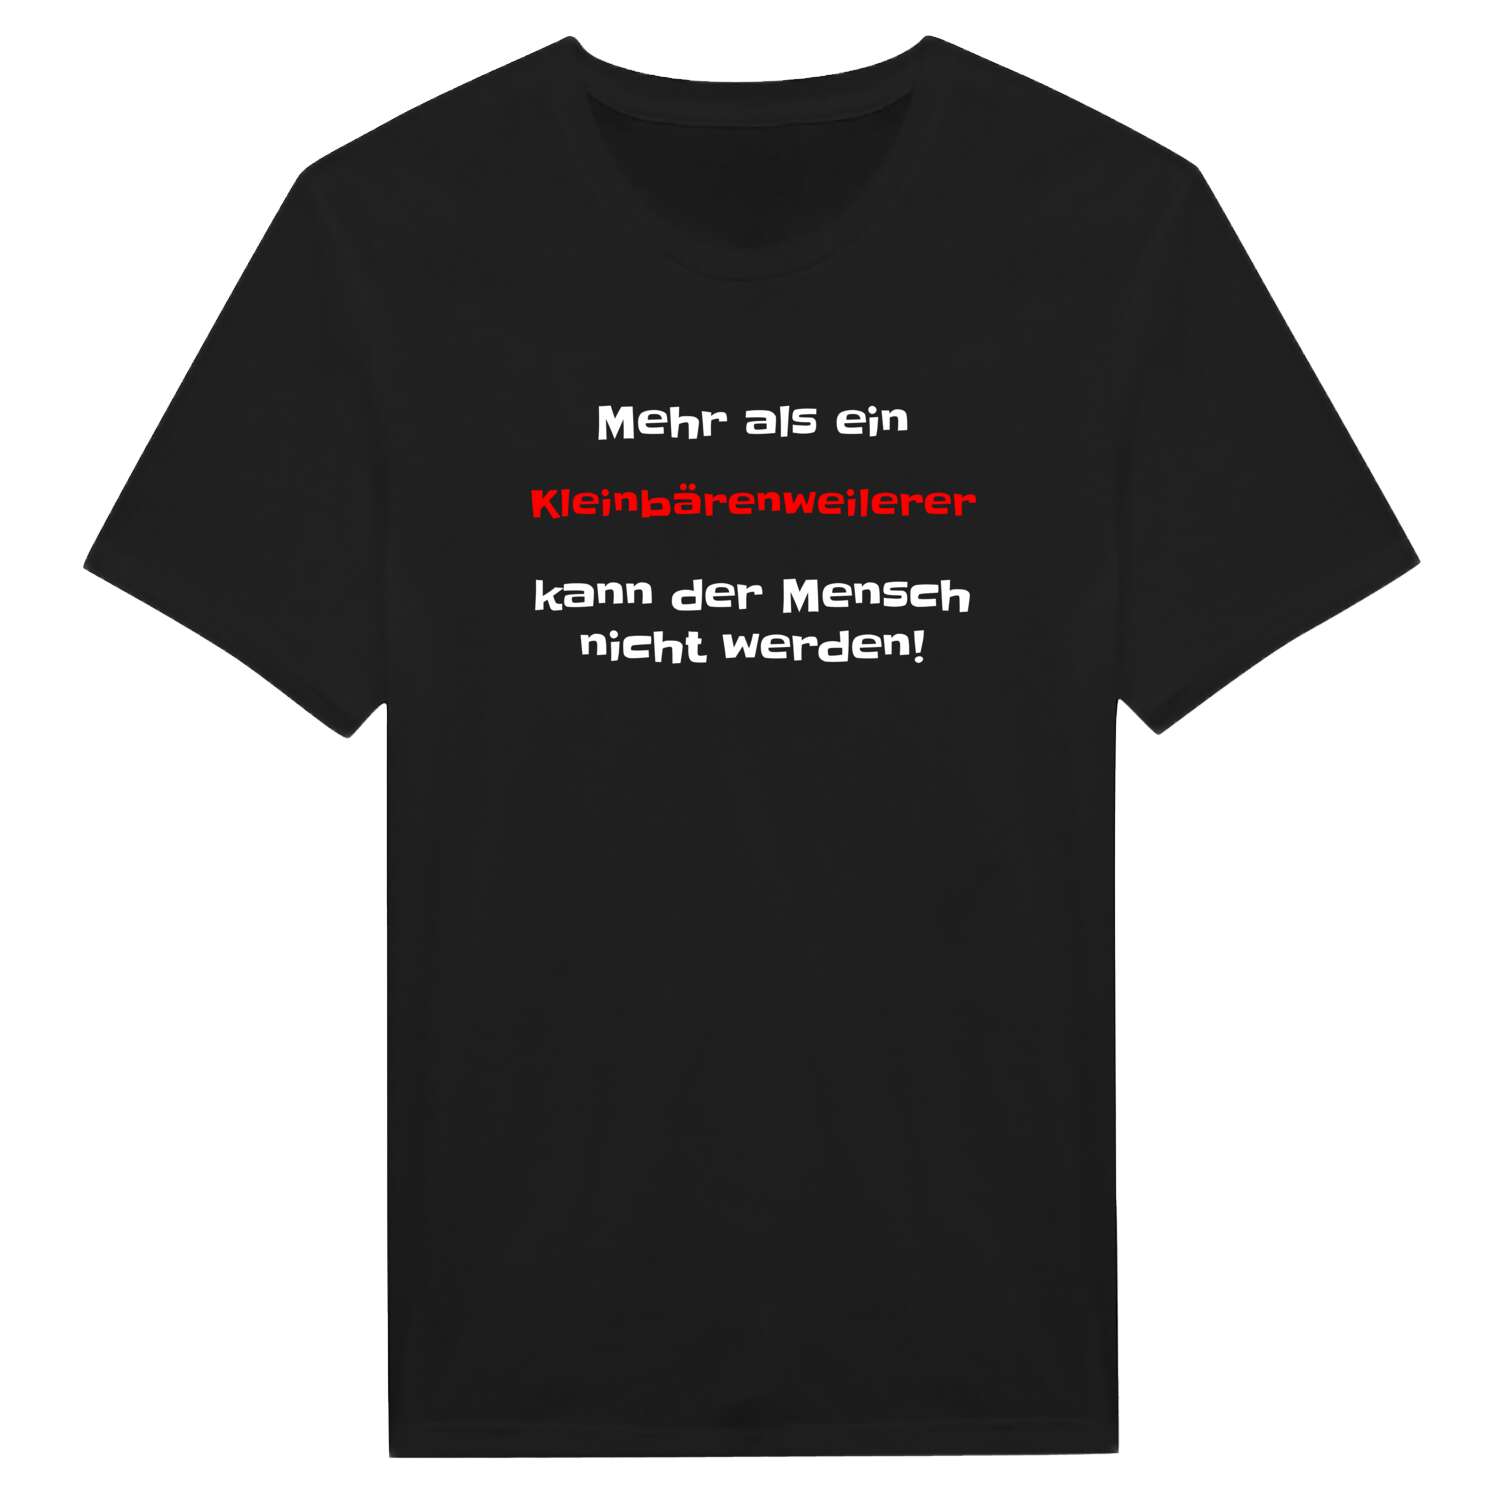 Kleinbärenweiler T-Shirt »Mehr als ein«